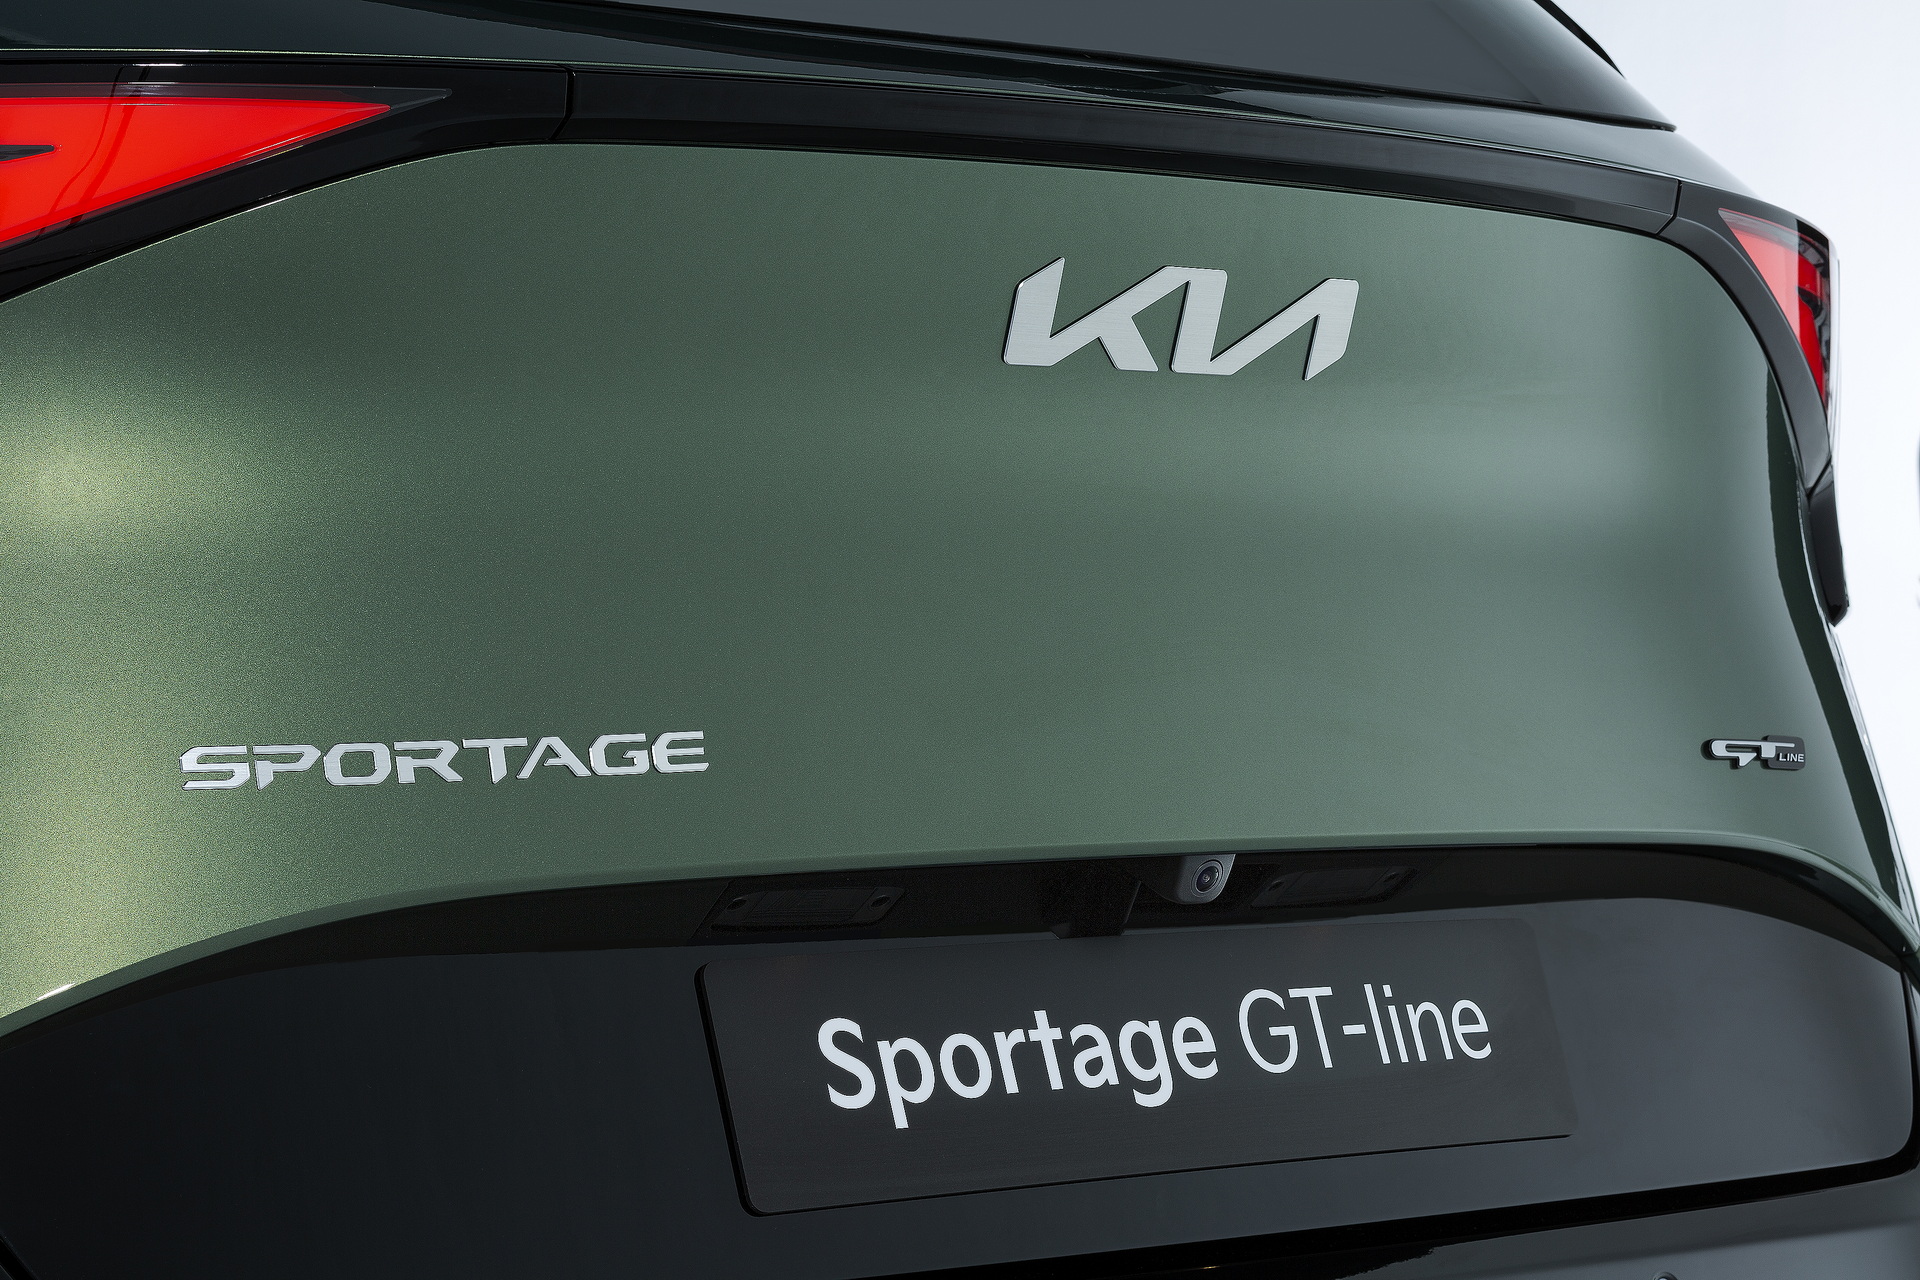 Yeni 2022 Kia Sportage'ın Avrupa versiyonu tanıtıldı: İşte tasarımı ve özellikleri